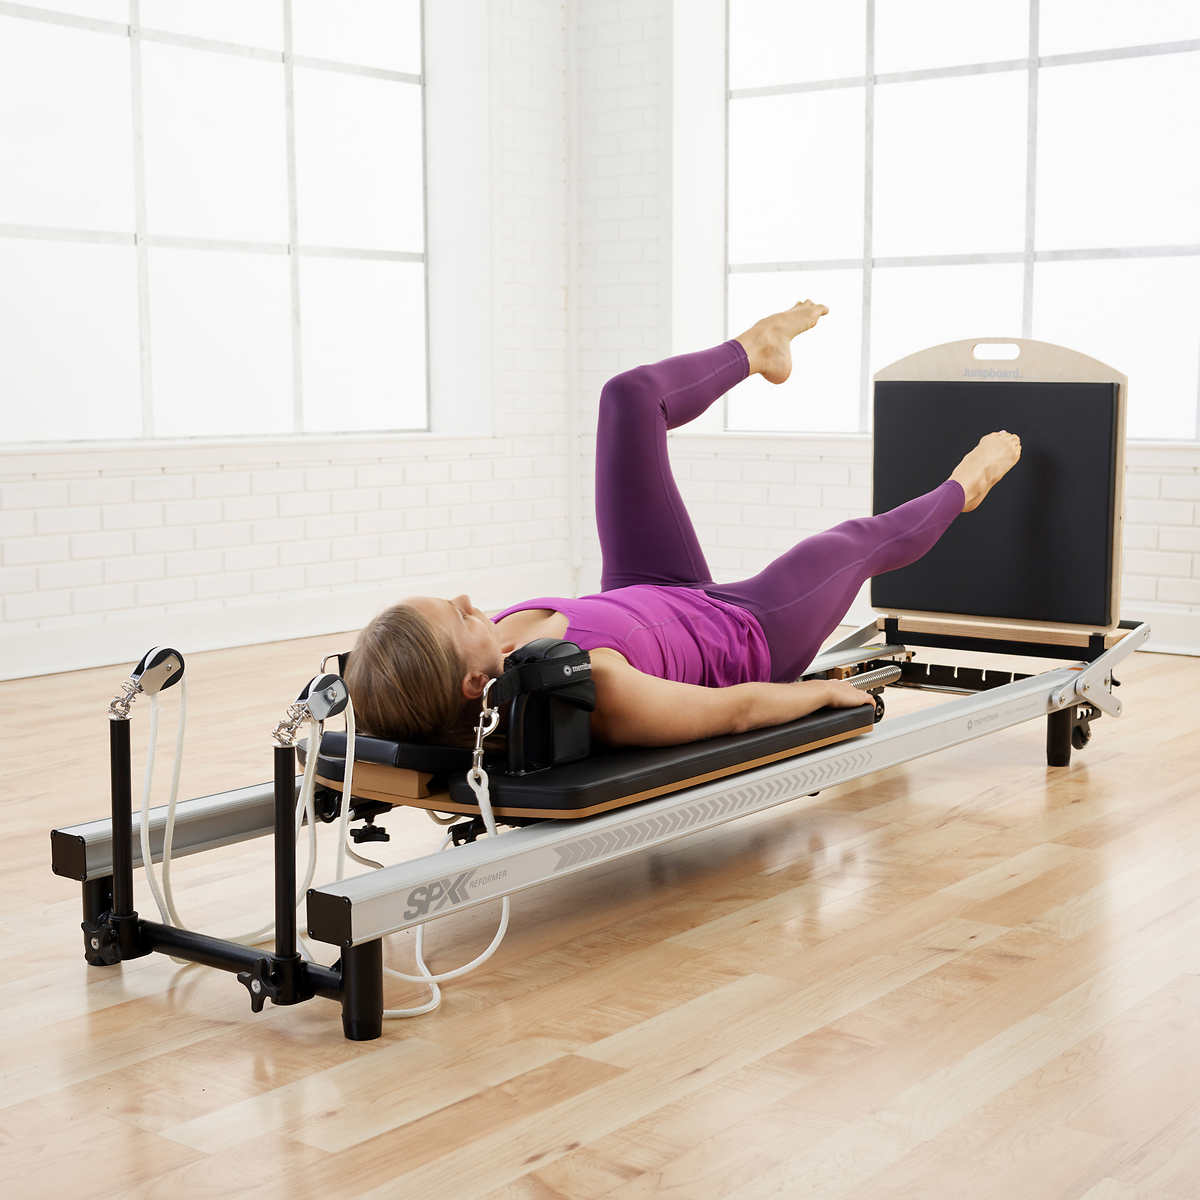 Stott Pilates Intermediate Reformer 2 DVD set workout exercise